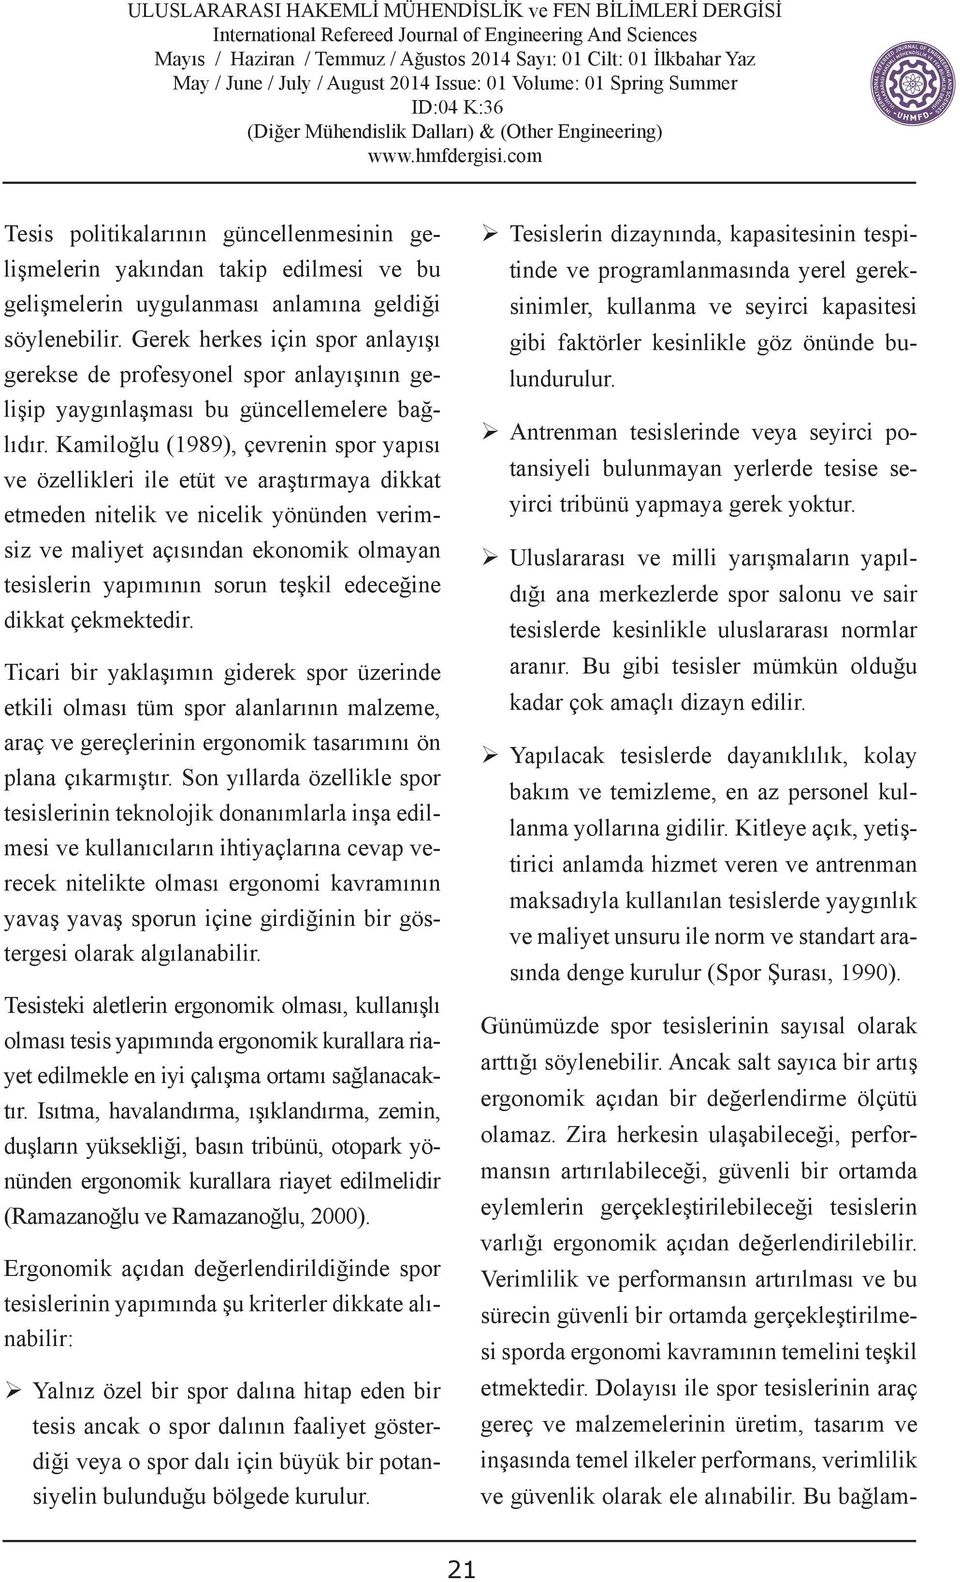 Kamiloğlu (1989), çevrenin spor yapısı ve özellikleri ile etüt ve araştırmaya dikkat etmeden nitelik ve nicelik yönünden verimsiz ve maliyet açısından ekonomik olmayan tesislerin yapımının sorun